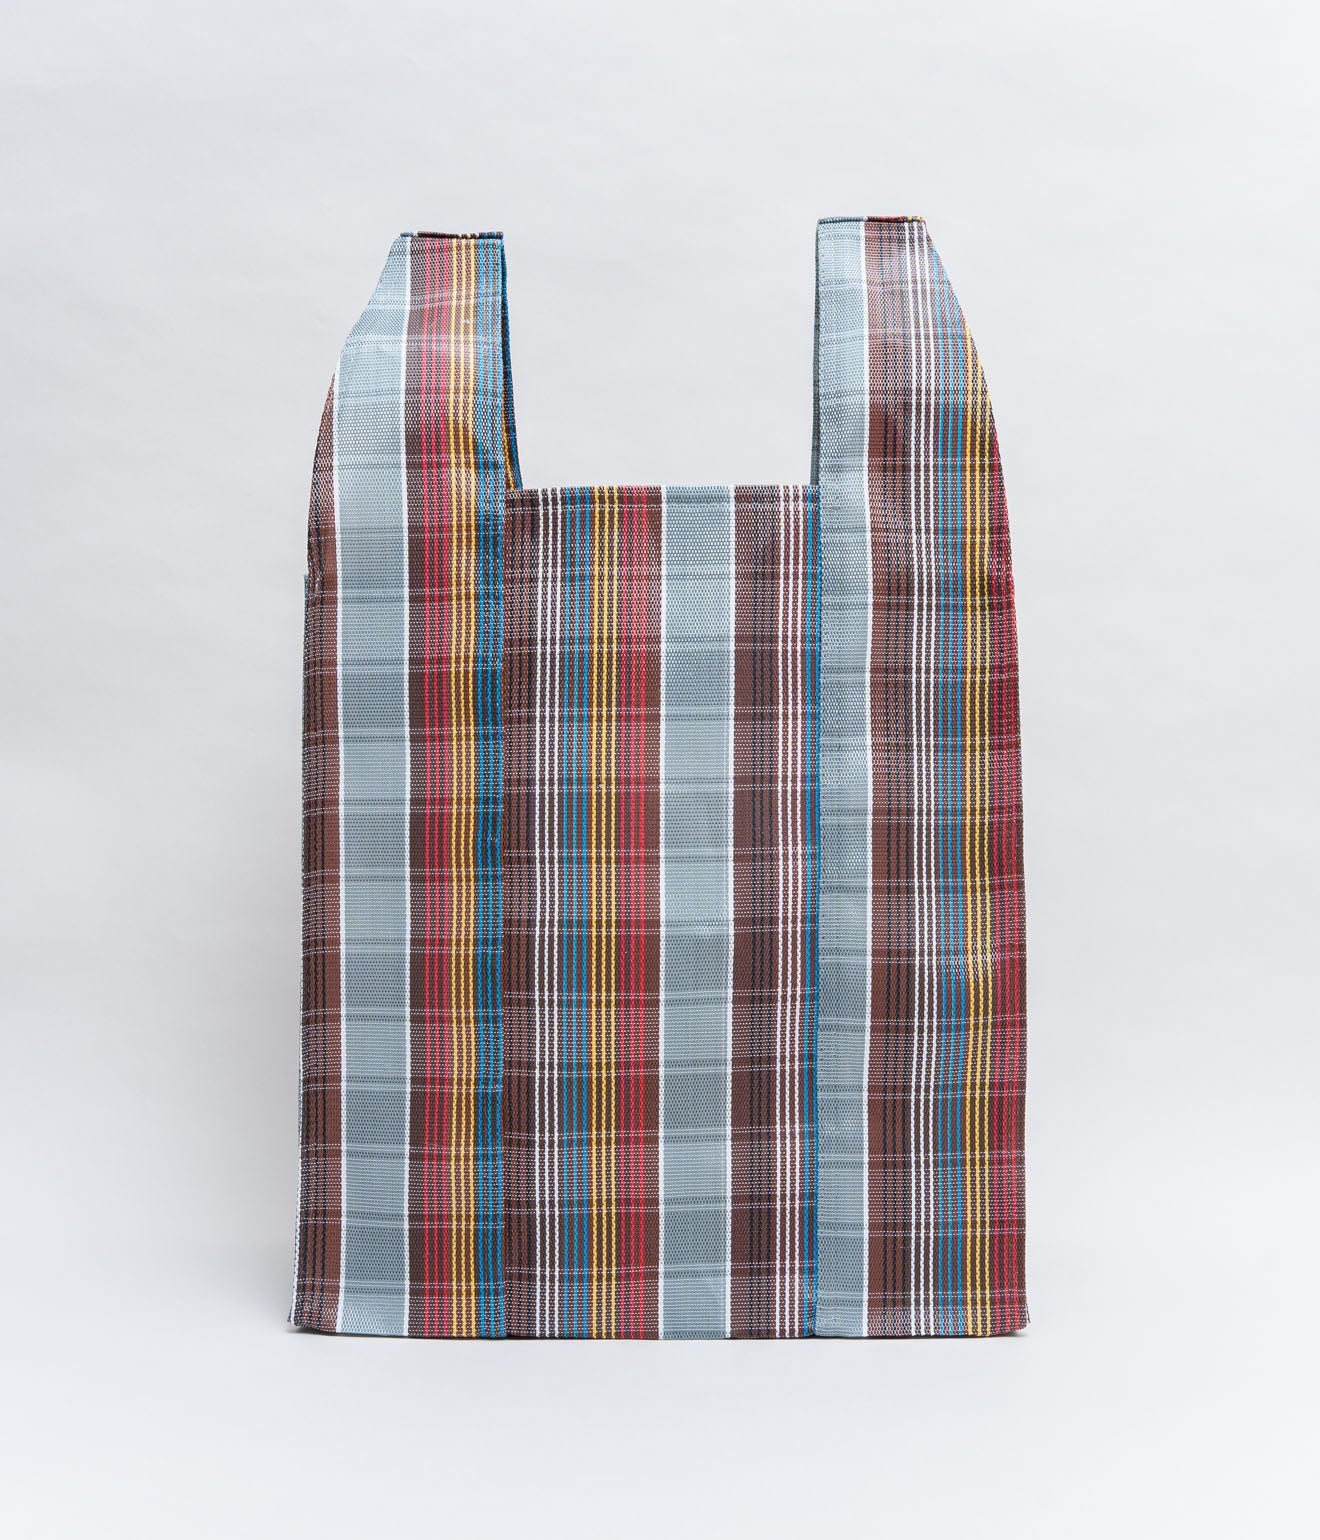 BONCHEY ”Shopping bag Medium" Cherg - WEAREALLANIMALS